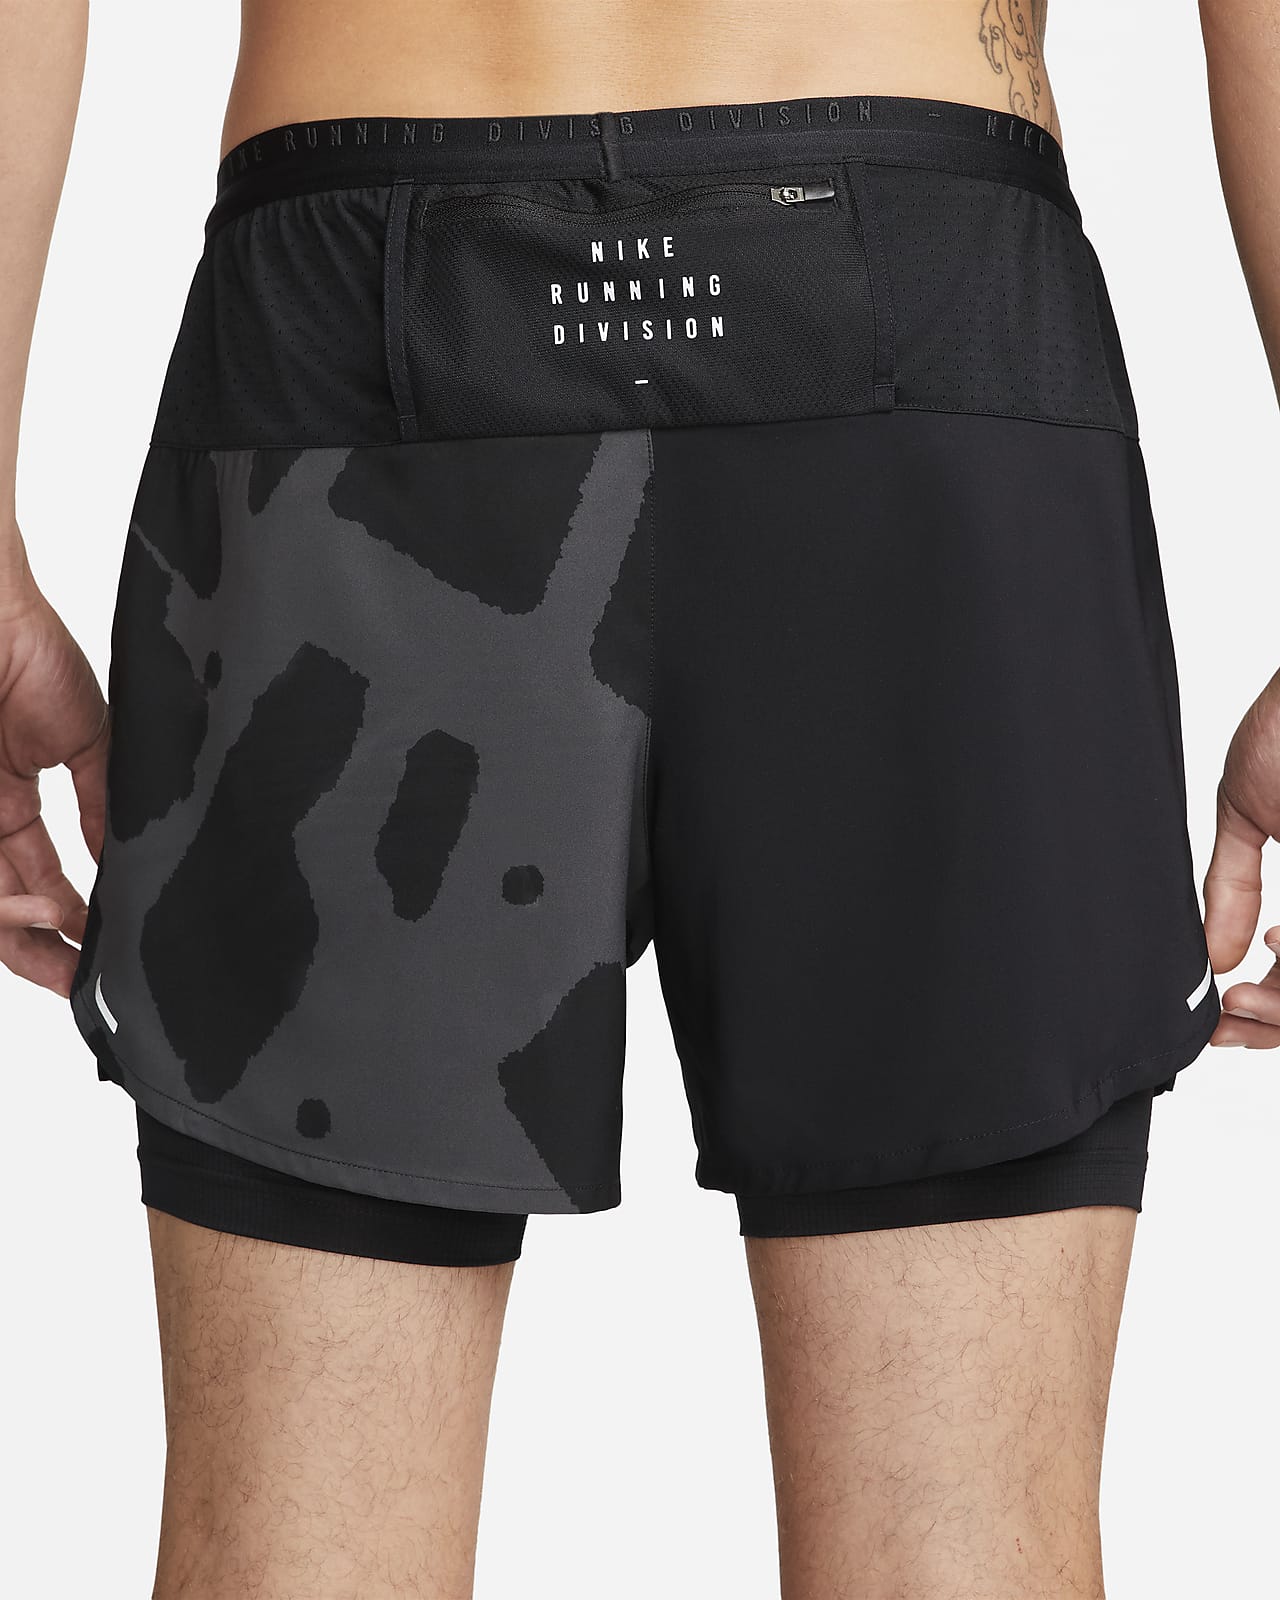 Edición operación Haz lo mejor que pueda Nike Dri-FIT Stride Run Division Pantalón corto de running 2 en 1 - Hombre.  Nike ES